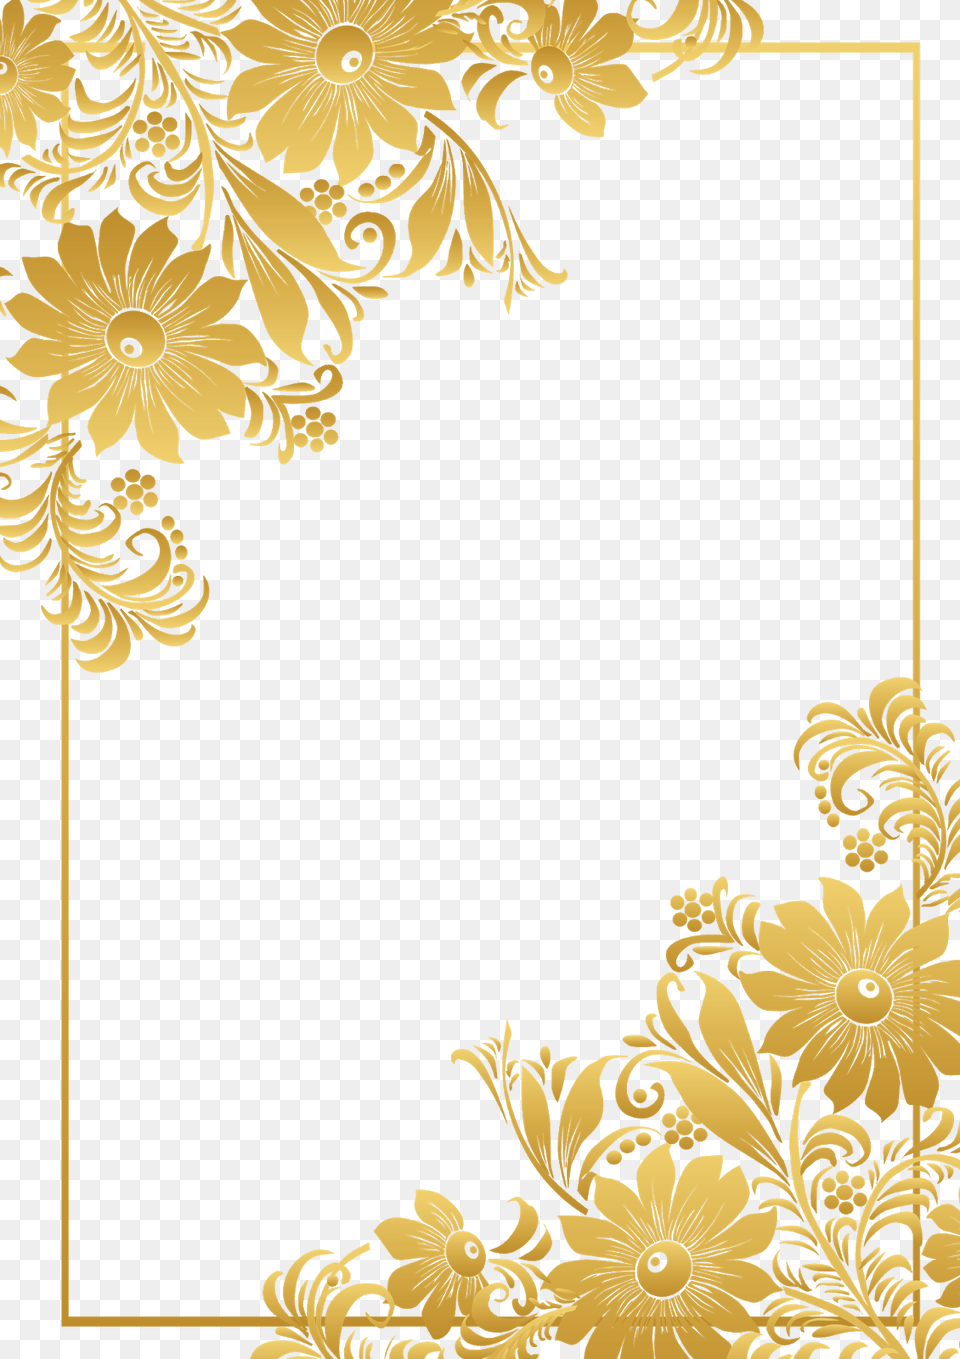 Golden Border Frame Download Zdjcia W Tle, Art, Floral Design, Graphics, Pattern Free Transparent Png